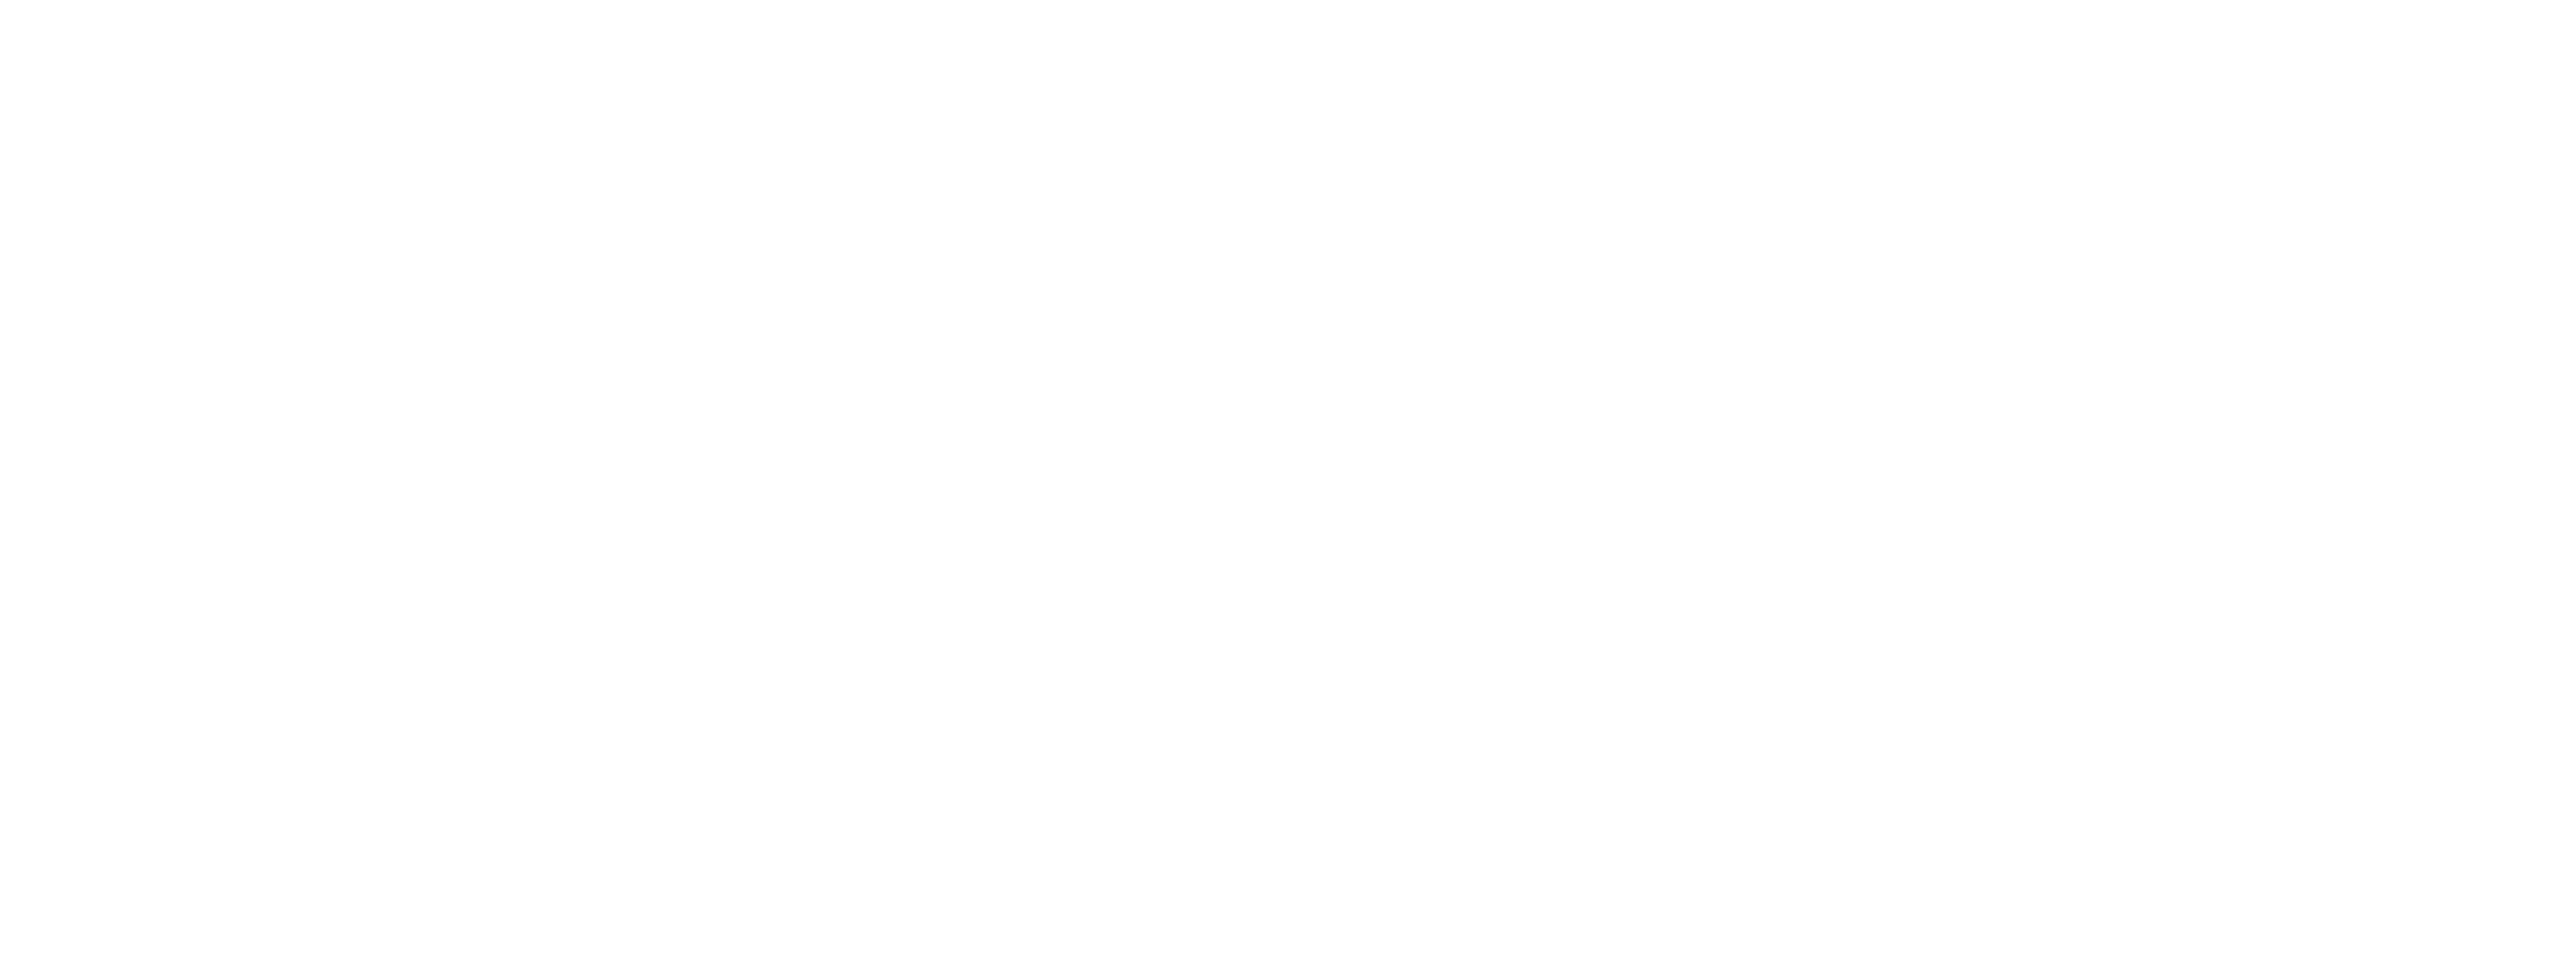 SGCommunities_Full-Horizontal_White_BG-None-02